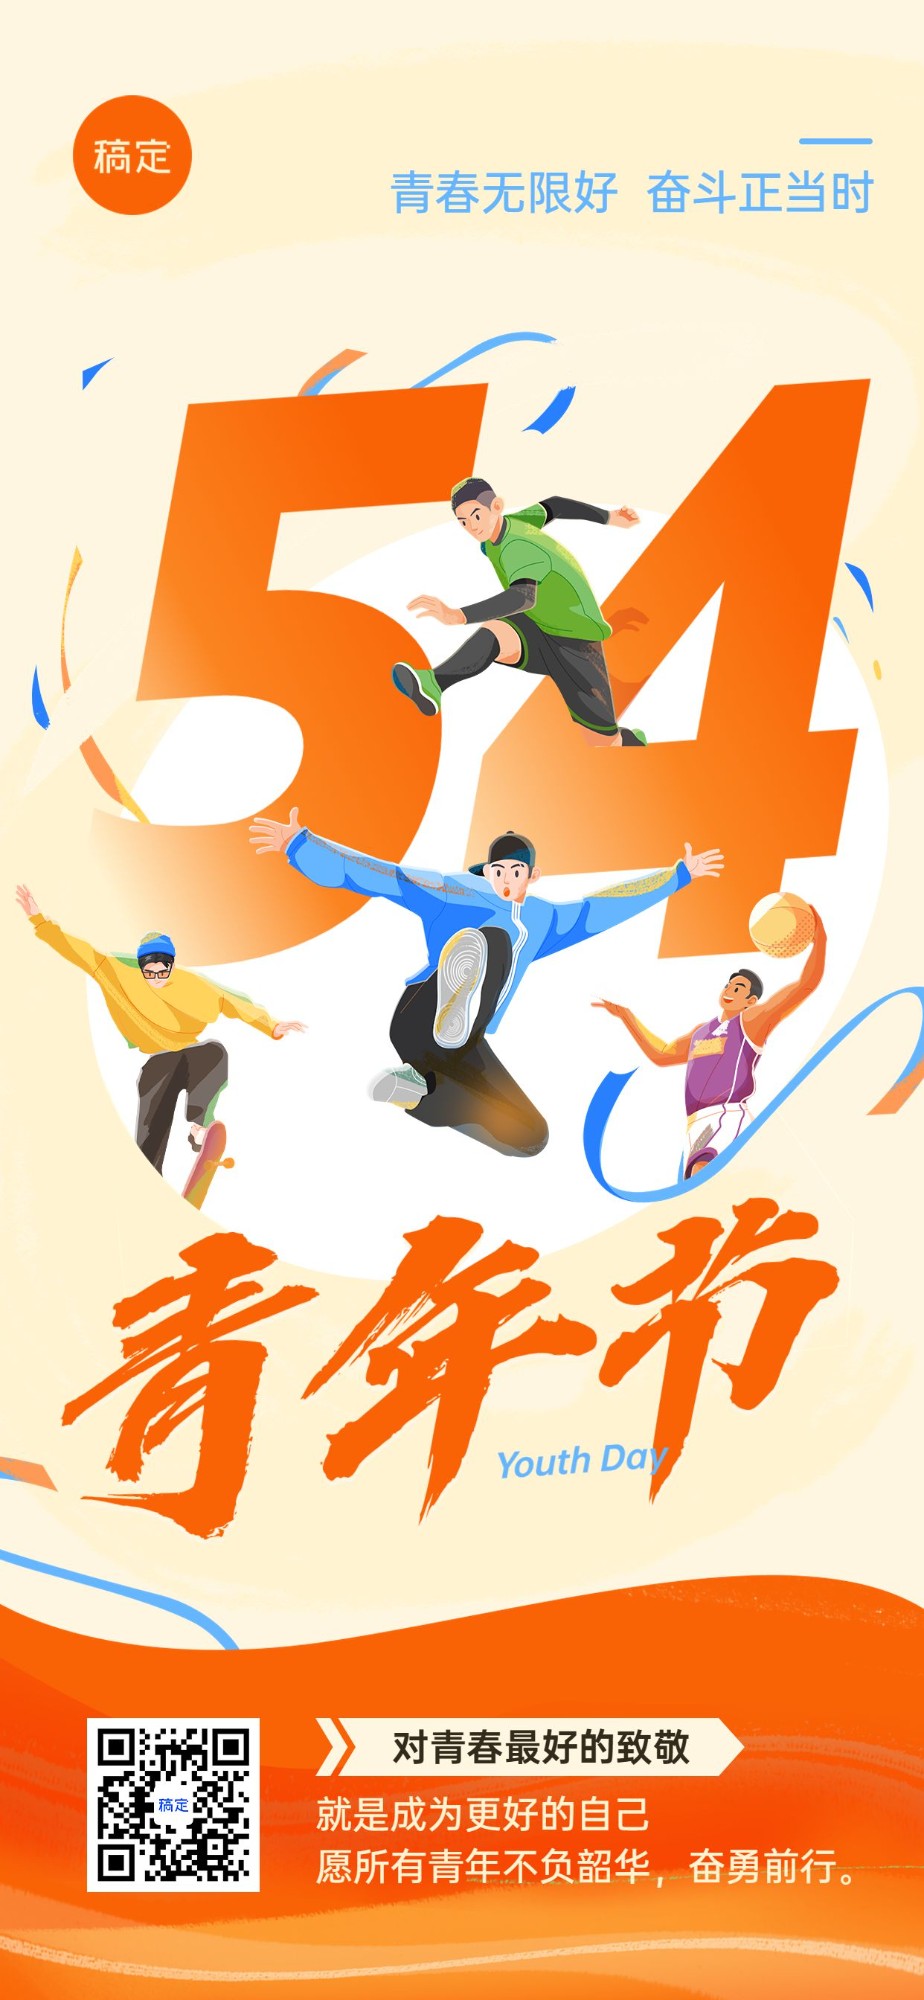 企业54青年节节日祝福贺卡插画风全屏竖版海报预览效果